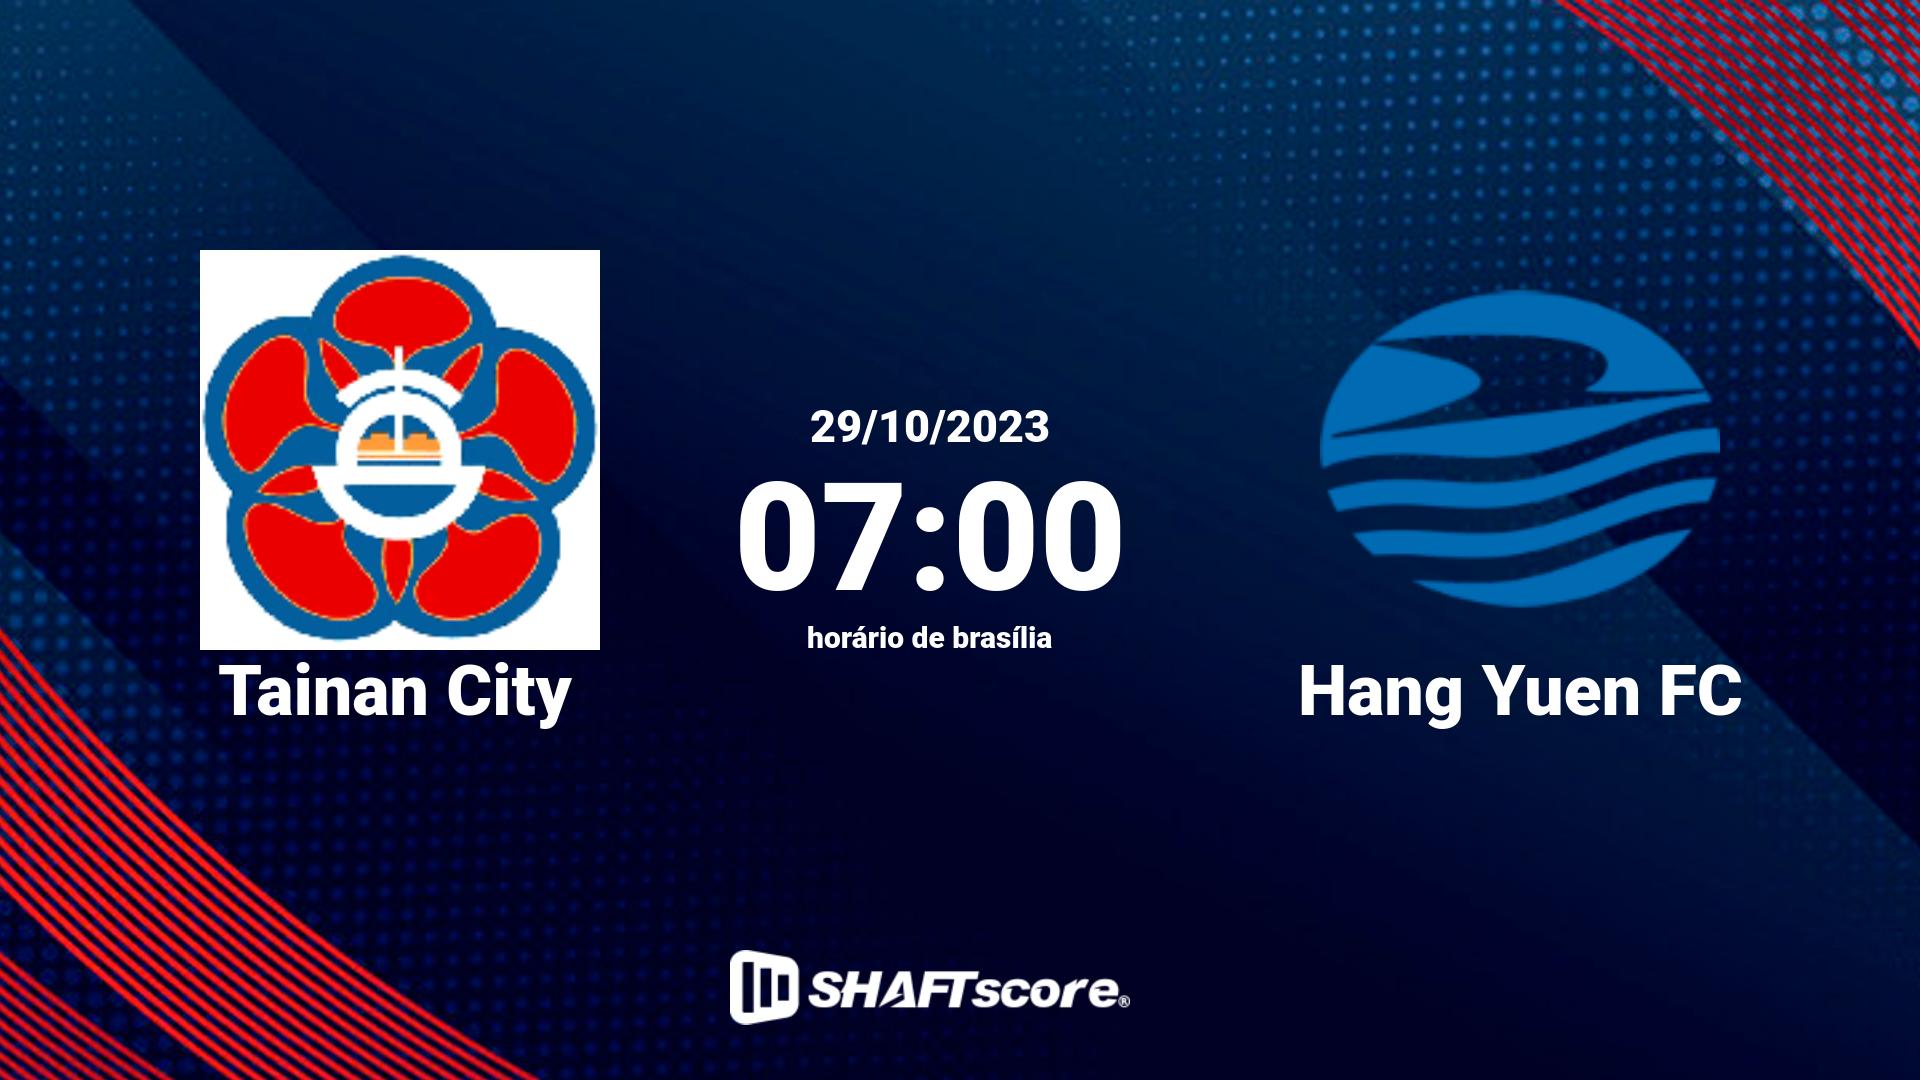 Estatísticas do jogo Tainan City vs Hang Yuen FC 29.10 07:00